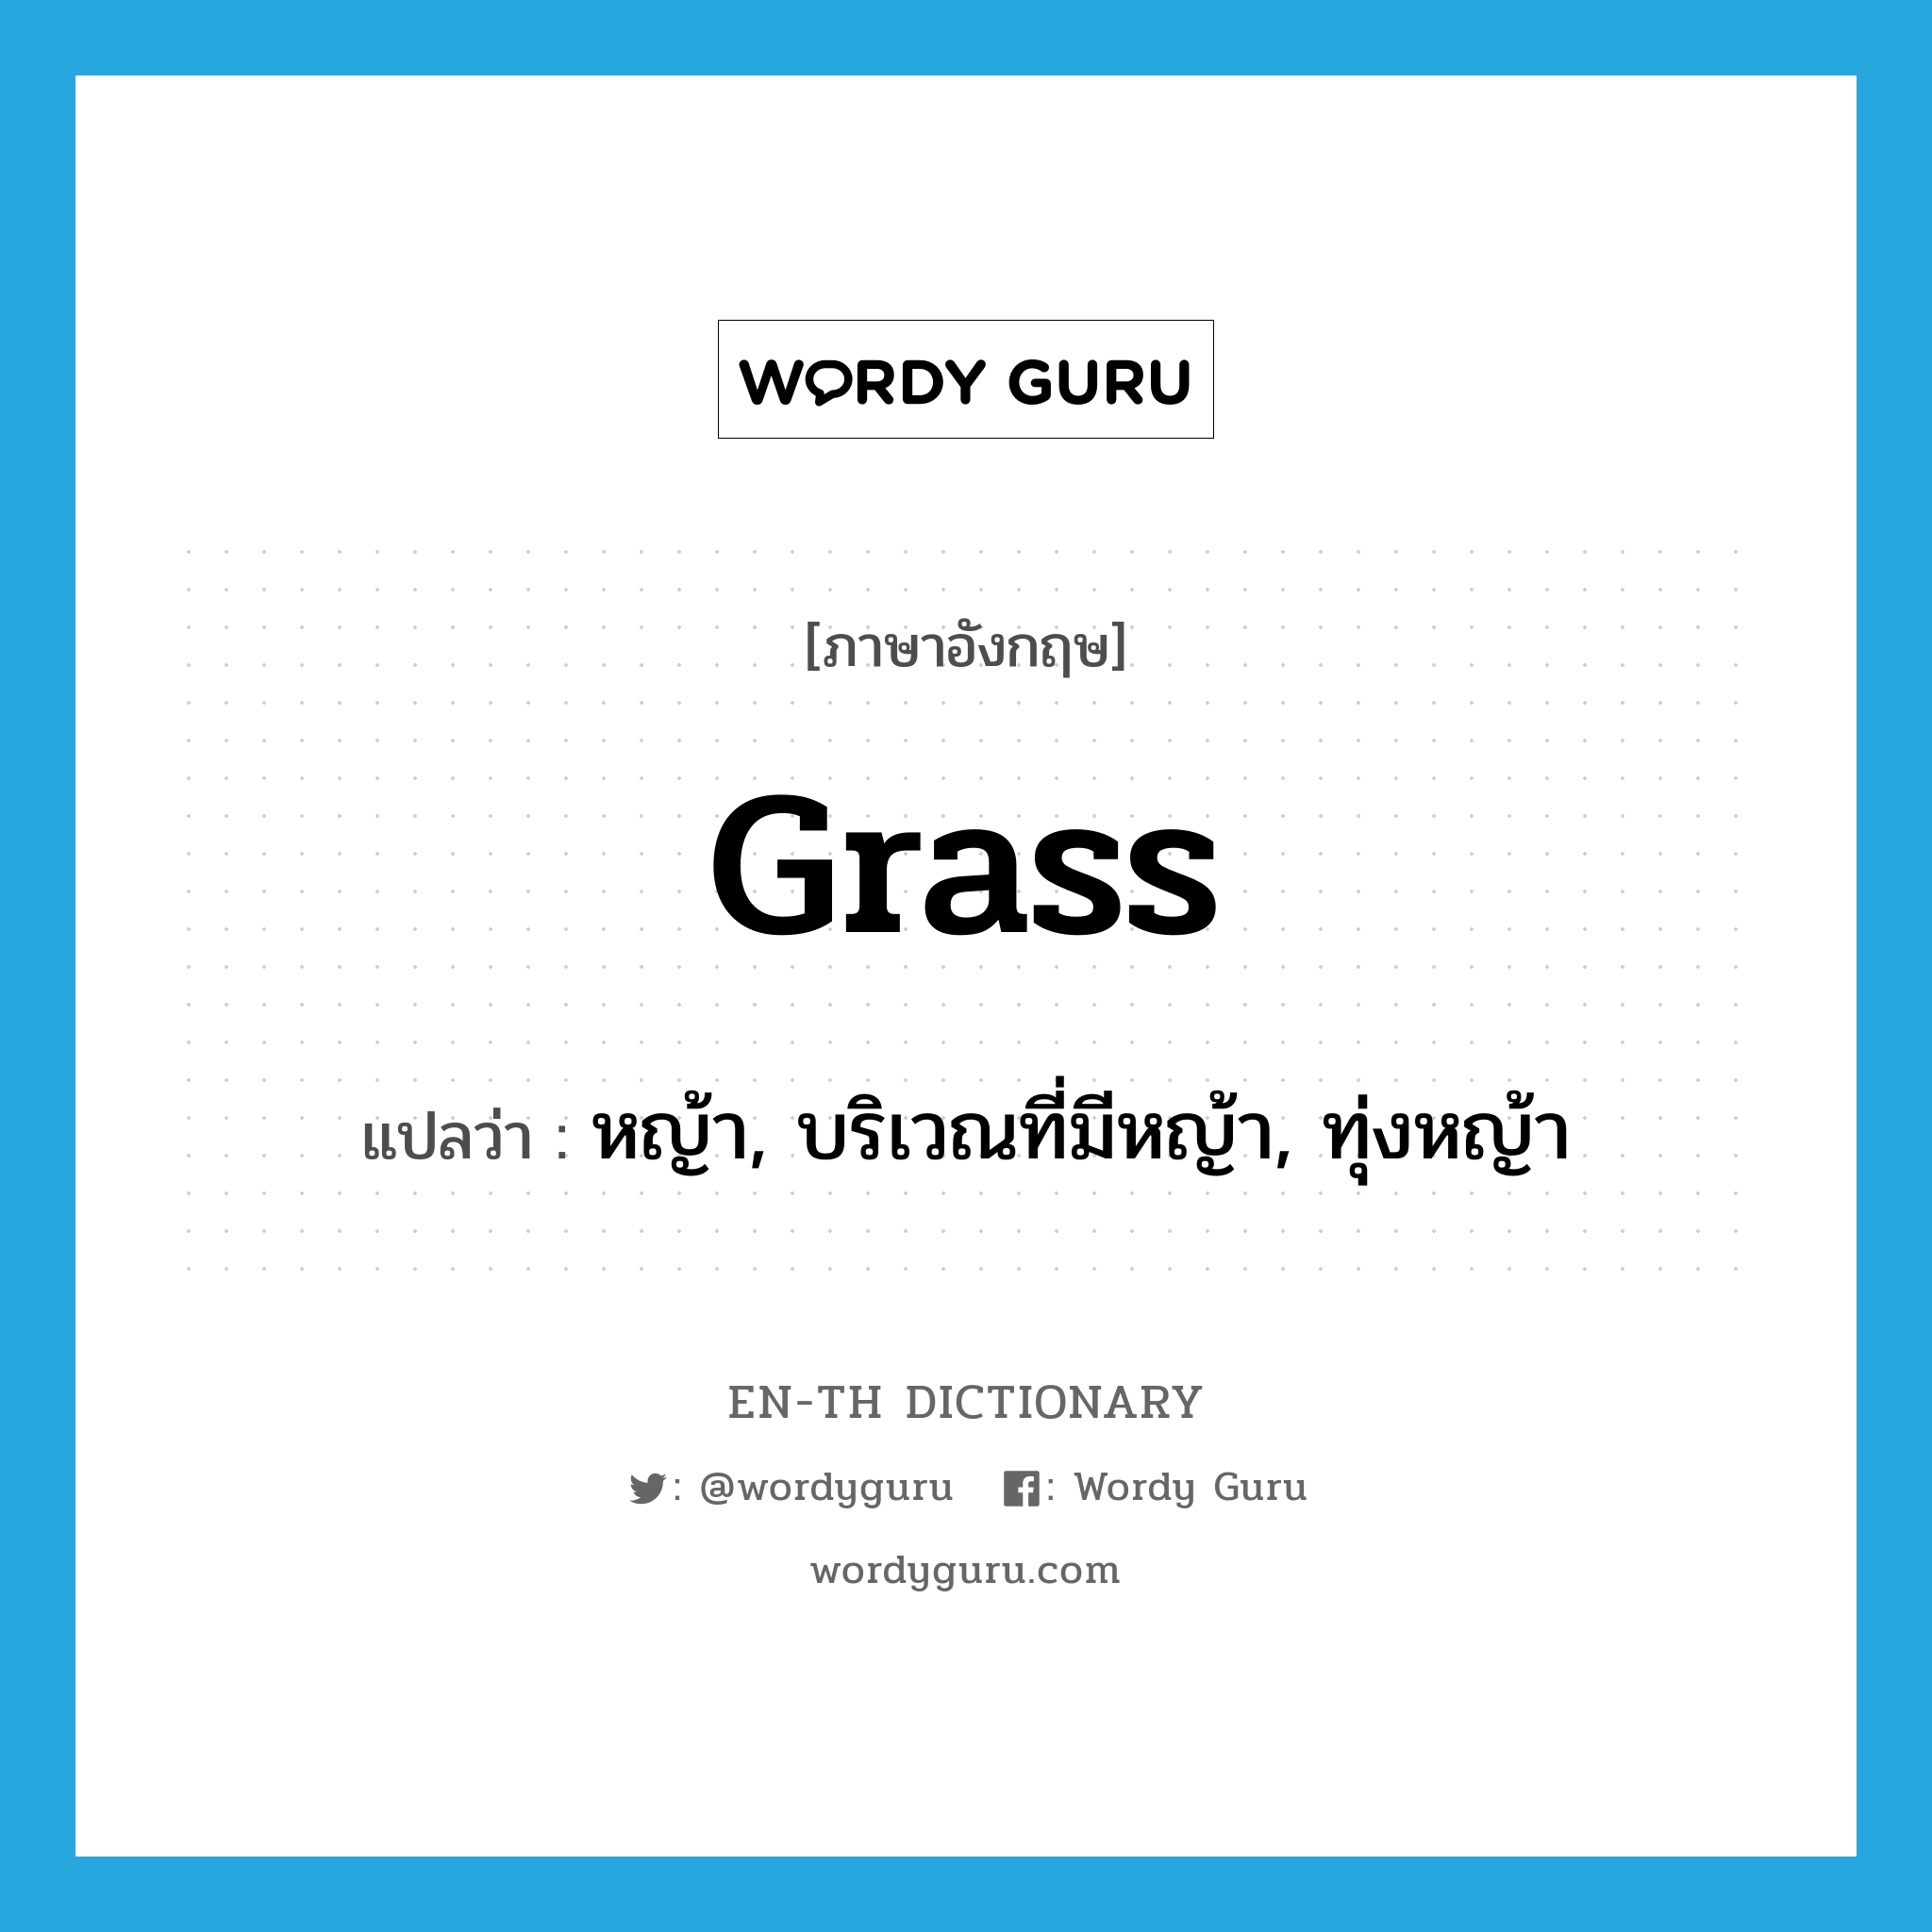 หญ้า, บริเวณที่มีหญ้า, ทุ่งหญ้า ภาษาอังกฤษ?, คำศัพท์ภาษาอังกฤษ หญ้า, บริเวณที่มีหญ้า, ทุ่งหญ้า แปลว่า grass ประเภท N หมวด N